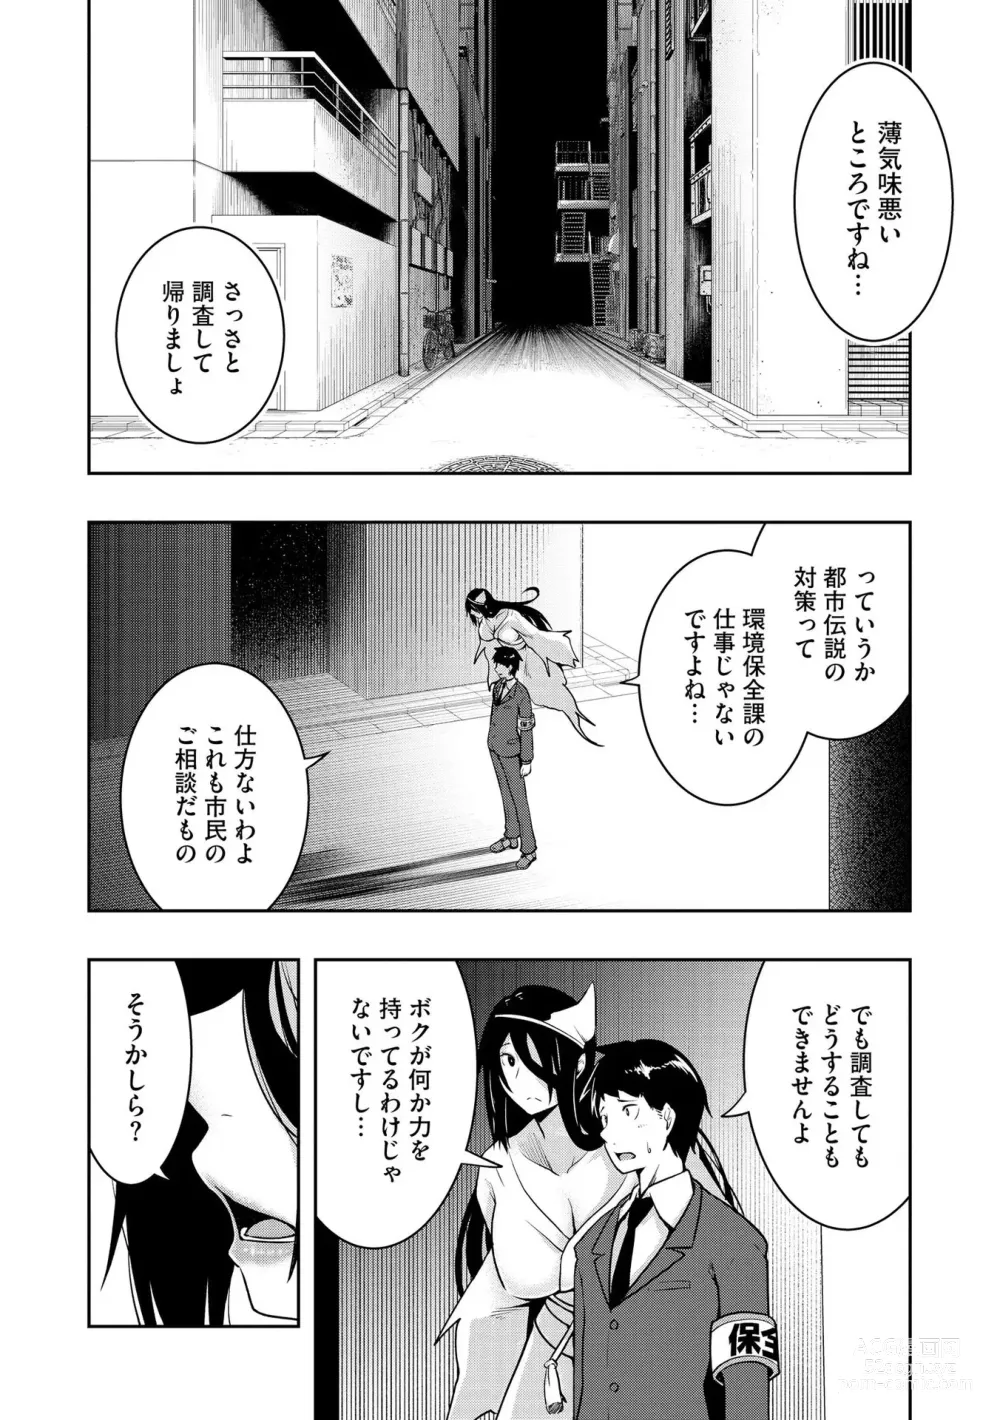 Page 9 of manga Kai-In Hontou wa Yarashii Toshi Densetsu